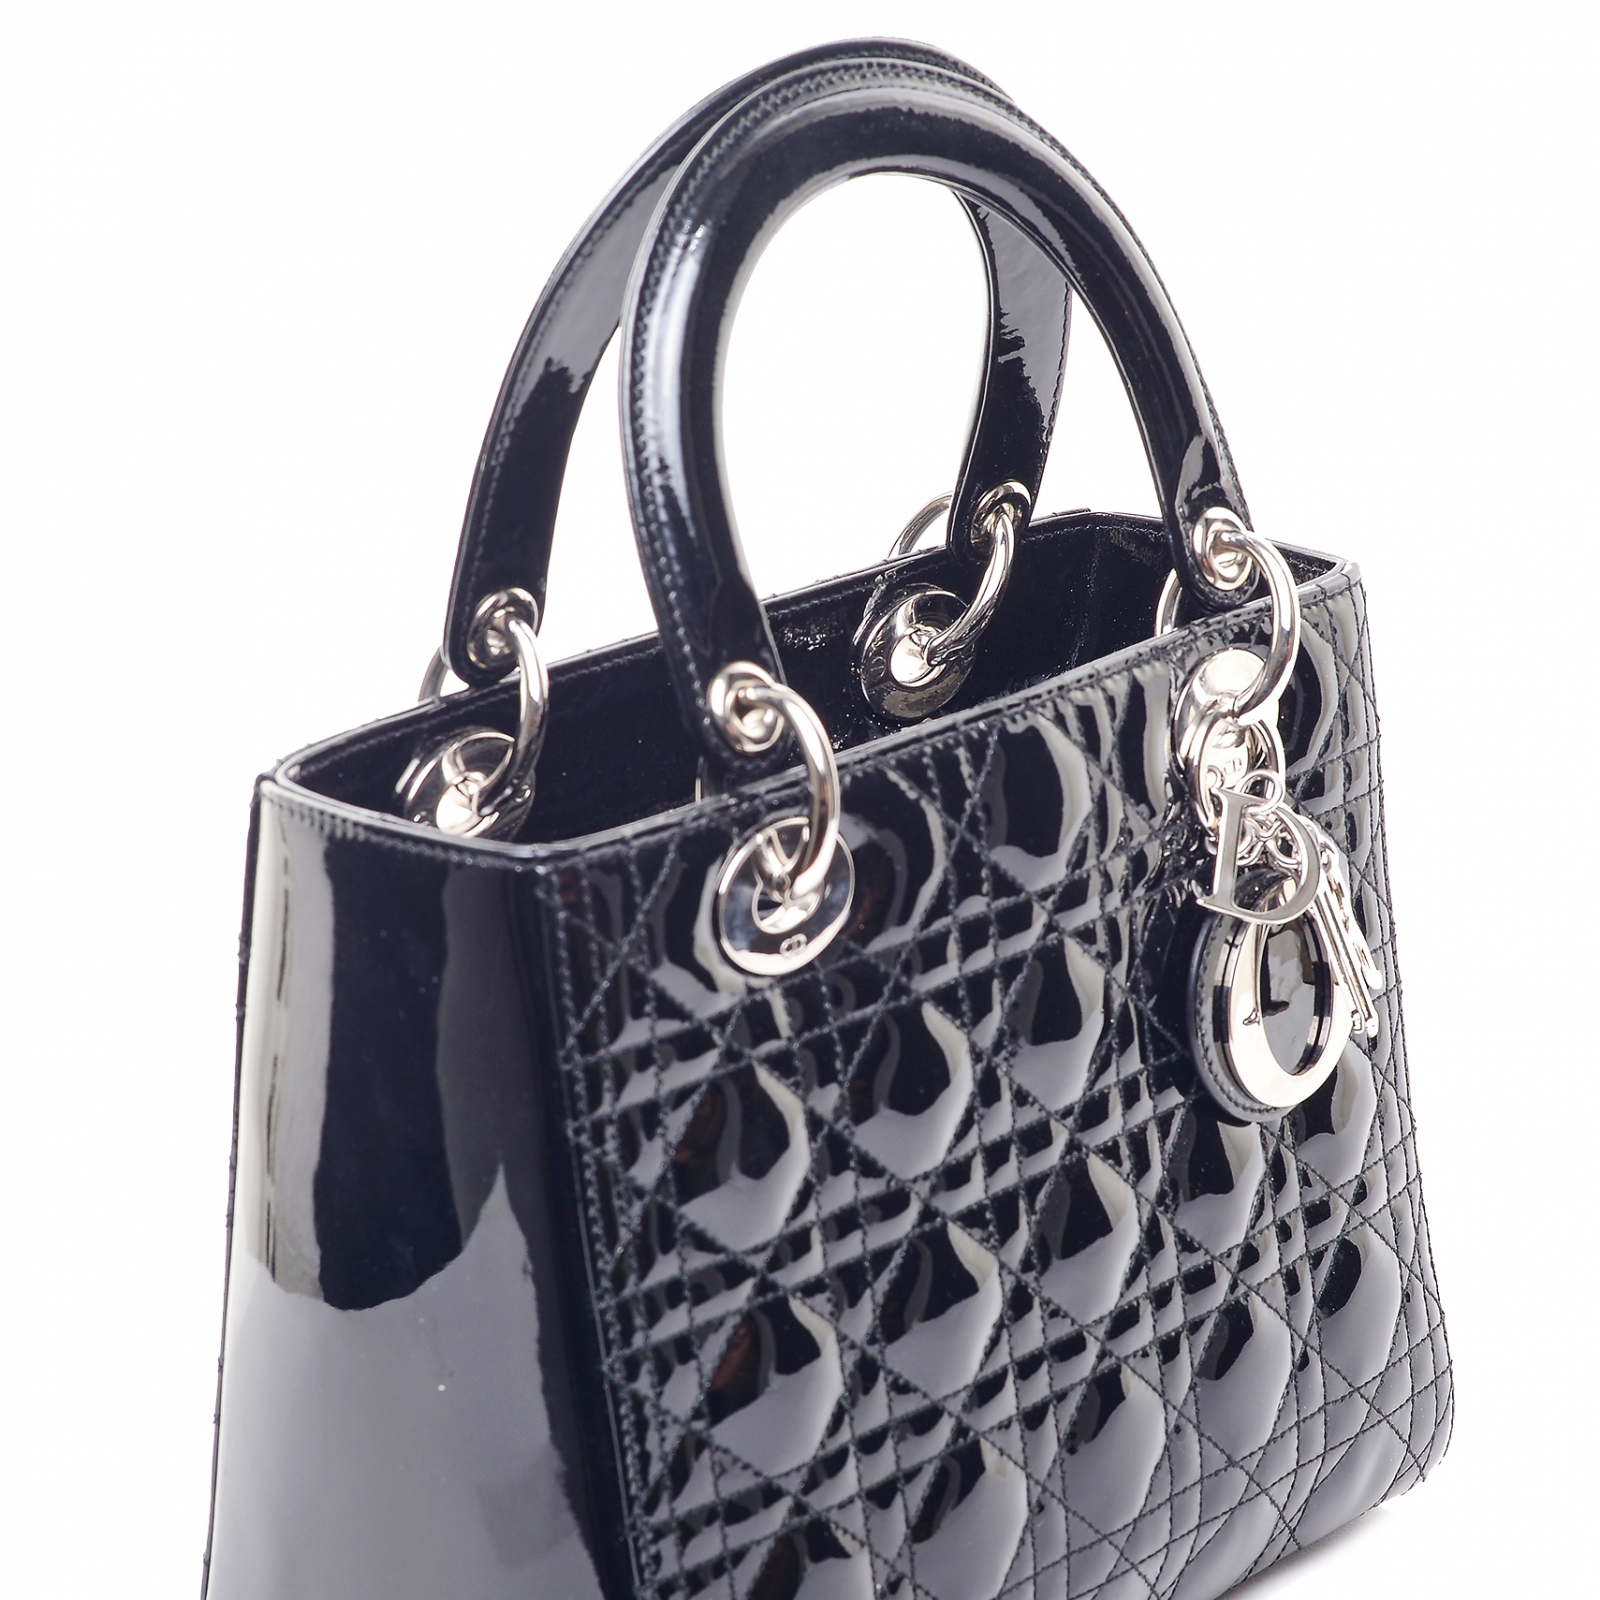 Lady Dior Bag